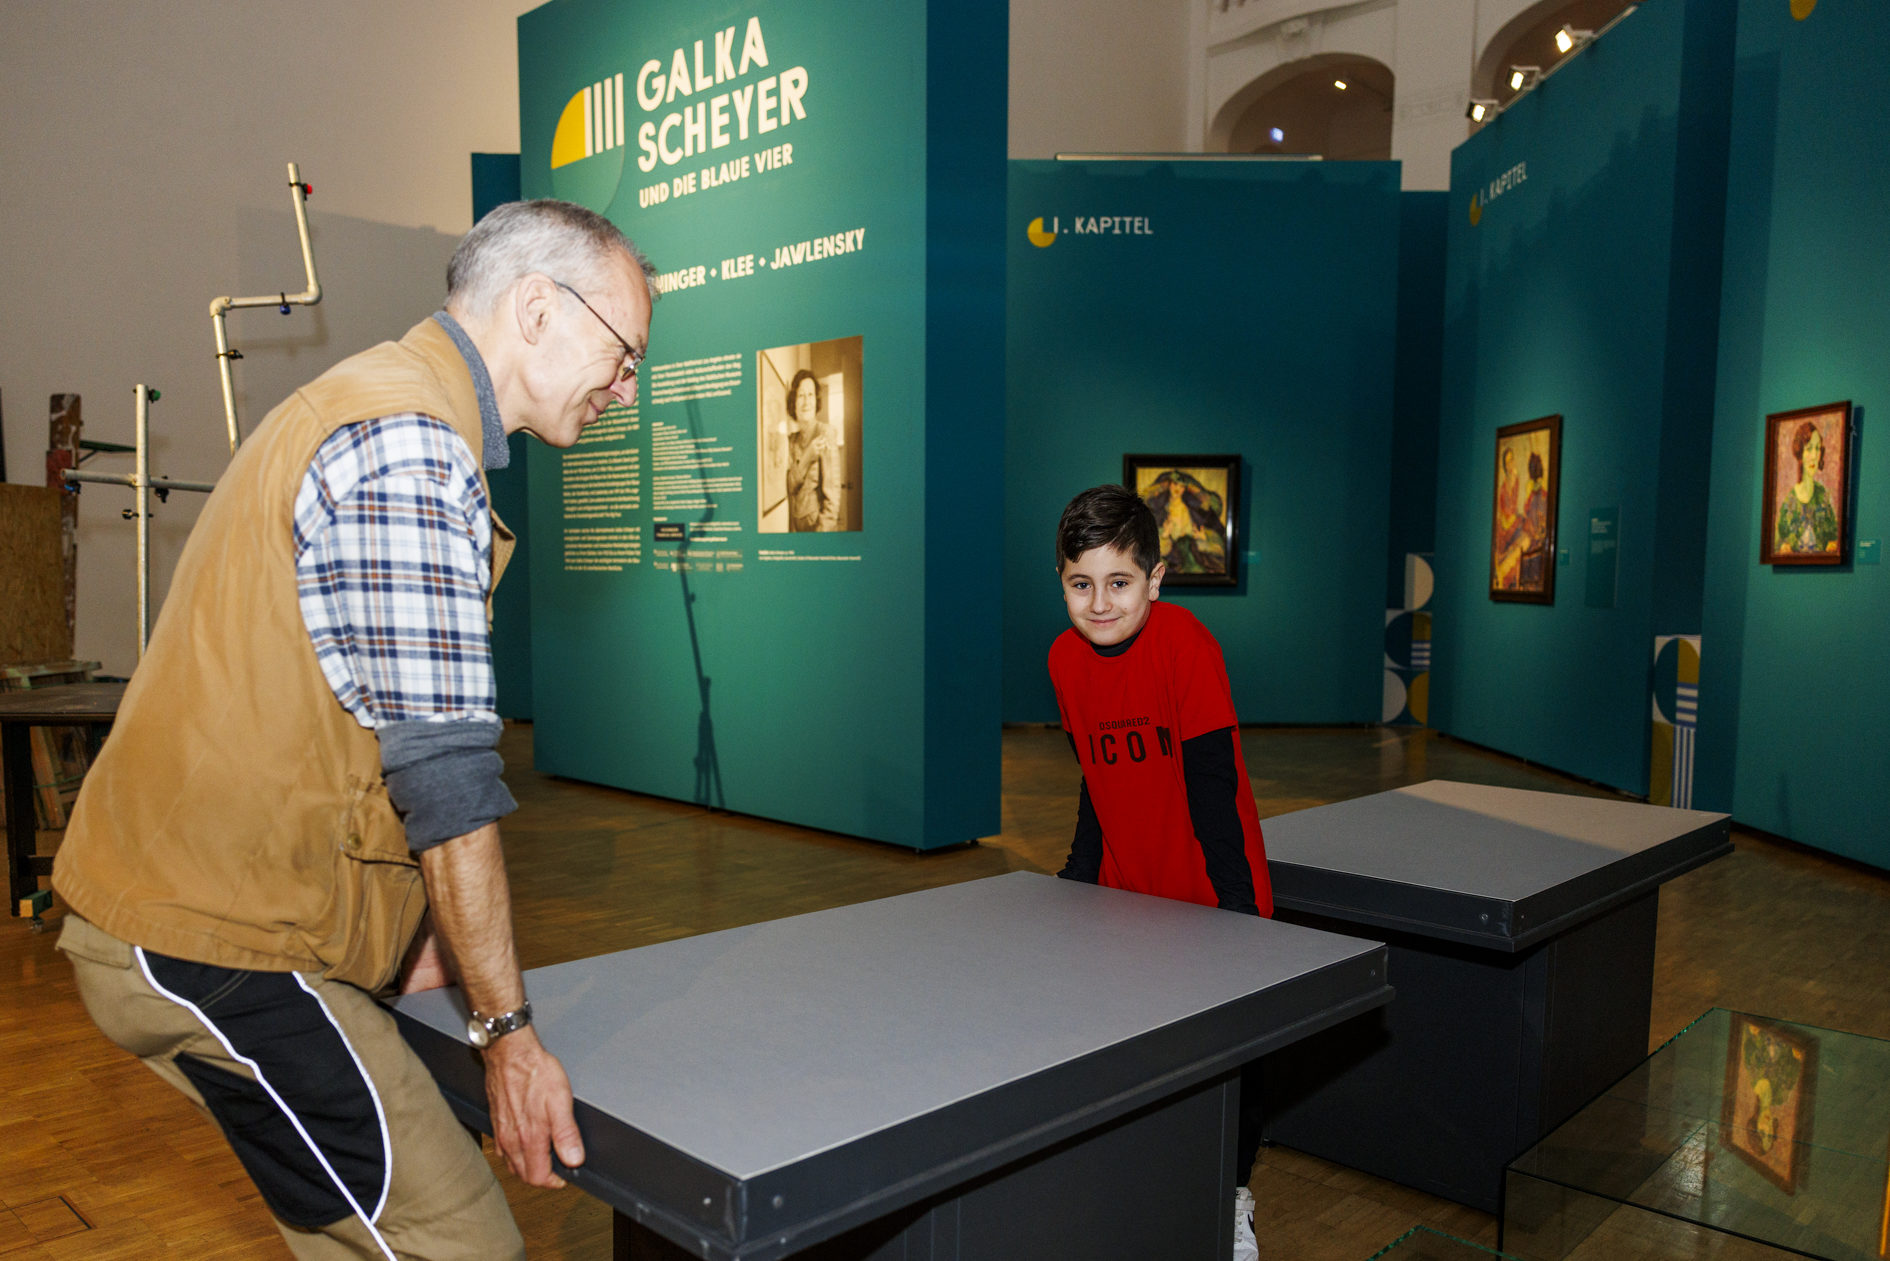 Zukunftstag im Städtischen Museum. Ein Junge hilft einem Mann beim Tragen eines Tisches. (Wird bei Klick vergrößert)